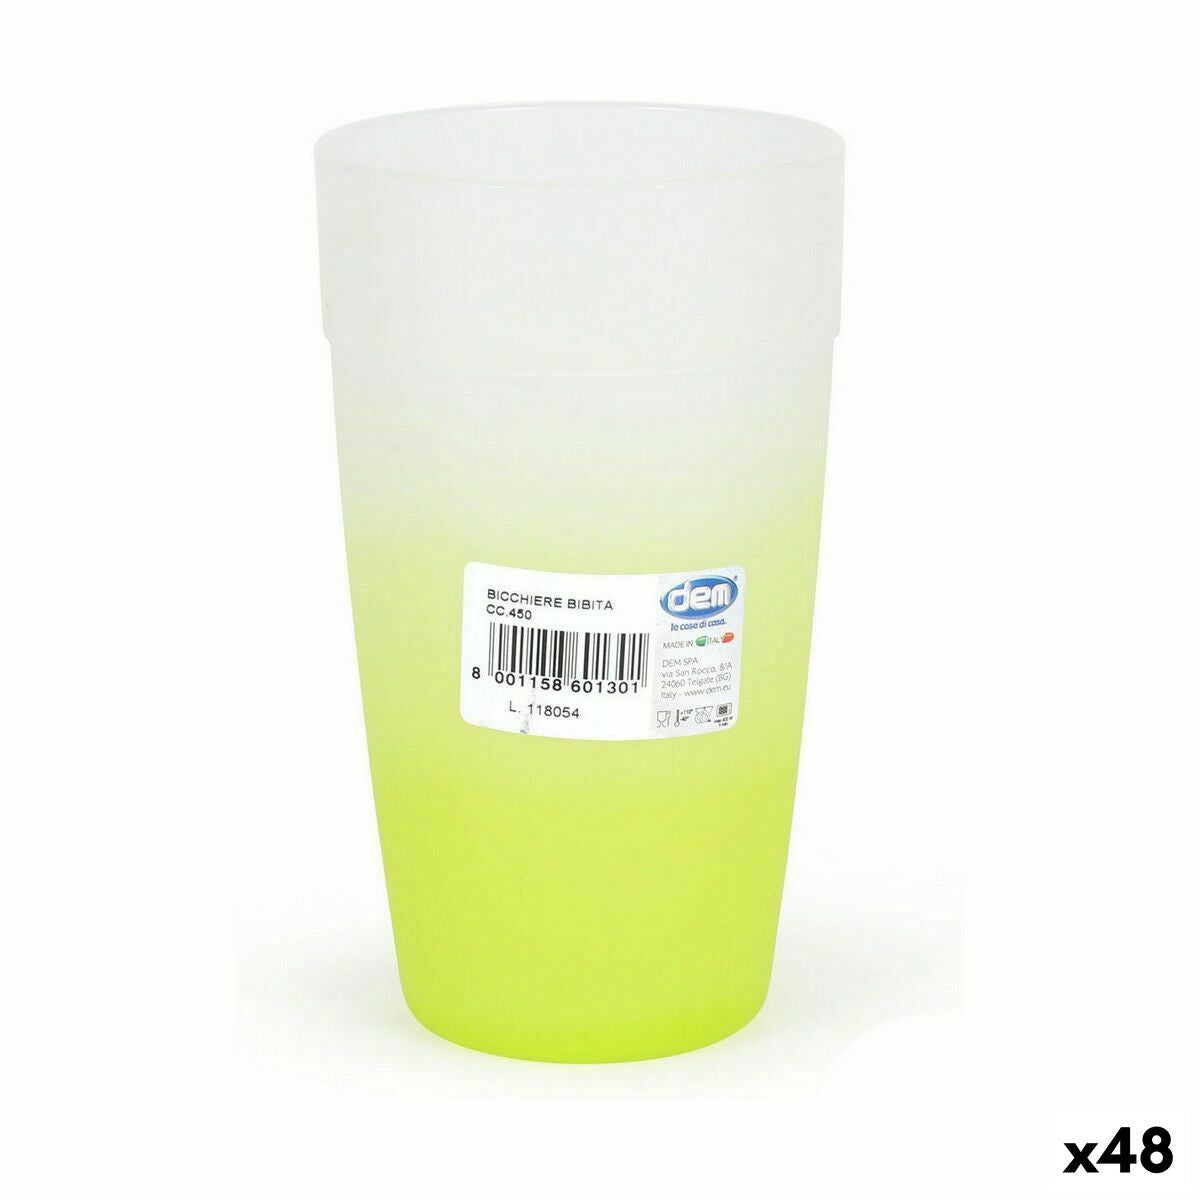 Trinkglas Dem Cristalway 450 ml (48 Stück)